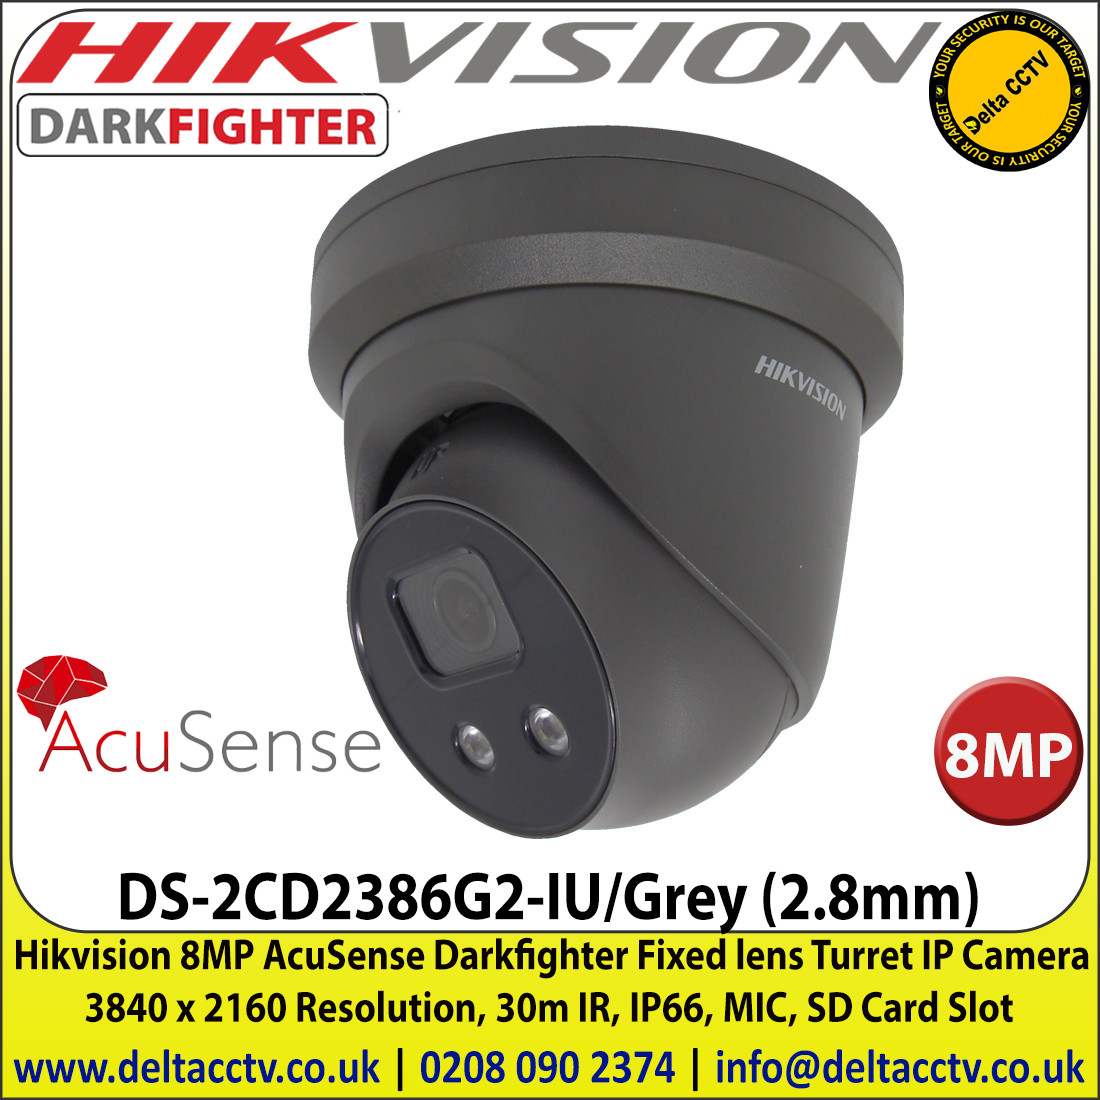 hikvision darkfighter price